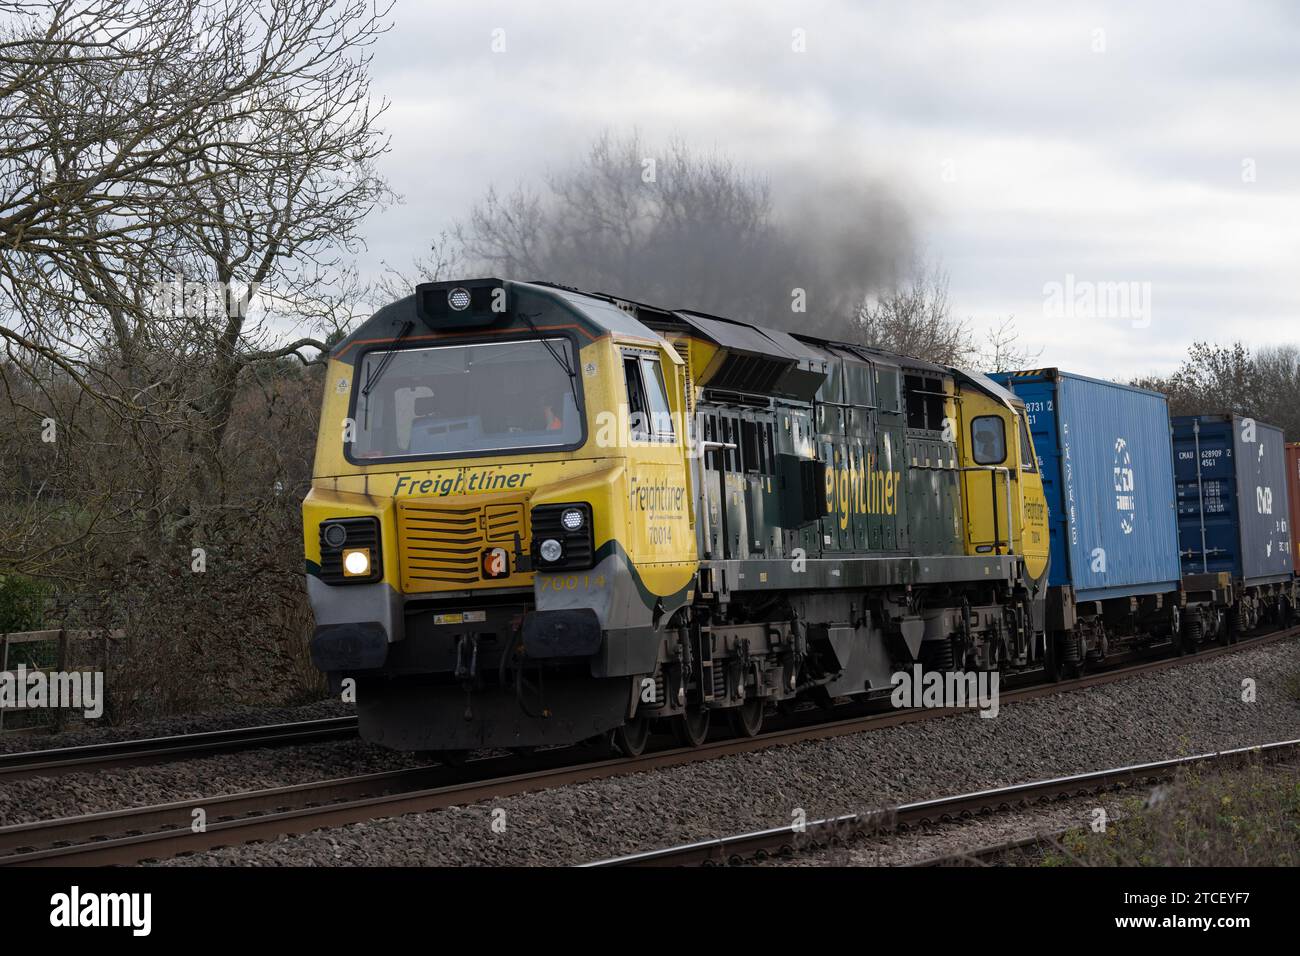 Diesellokomotive der Baureihe 70 Nr. 70014, die einen freightliner-Zug zieht, Warwickshire, England, Vereinigtes Königreich Stockfoto